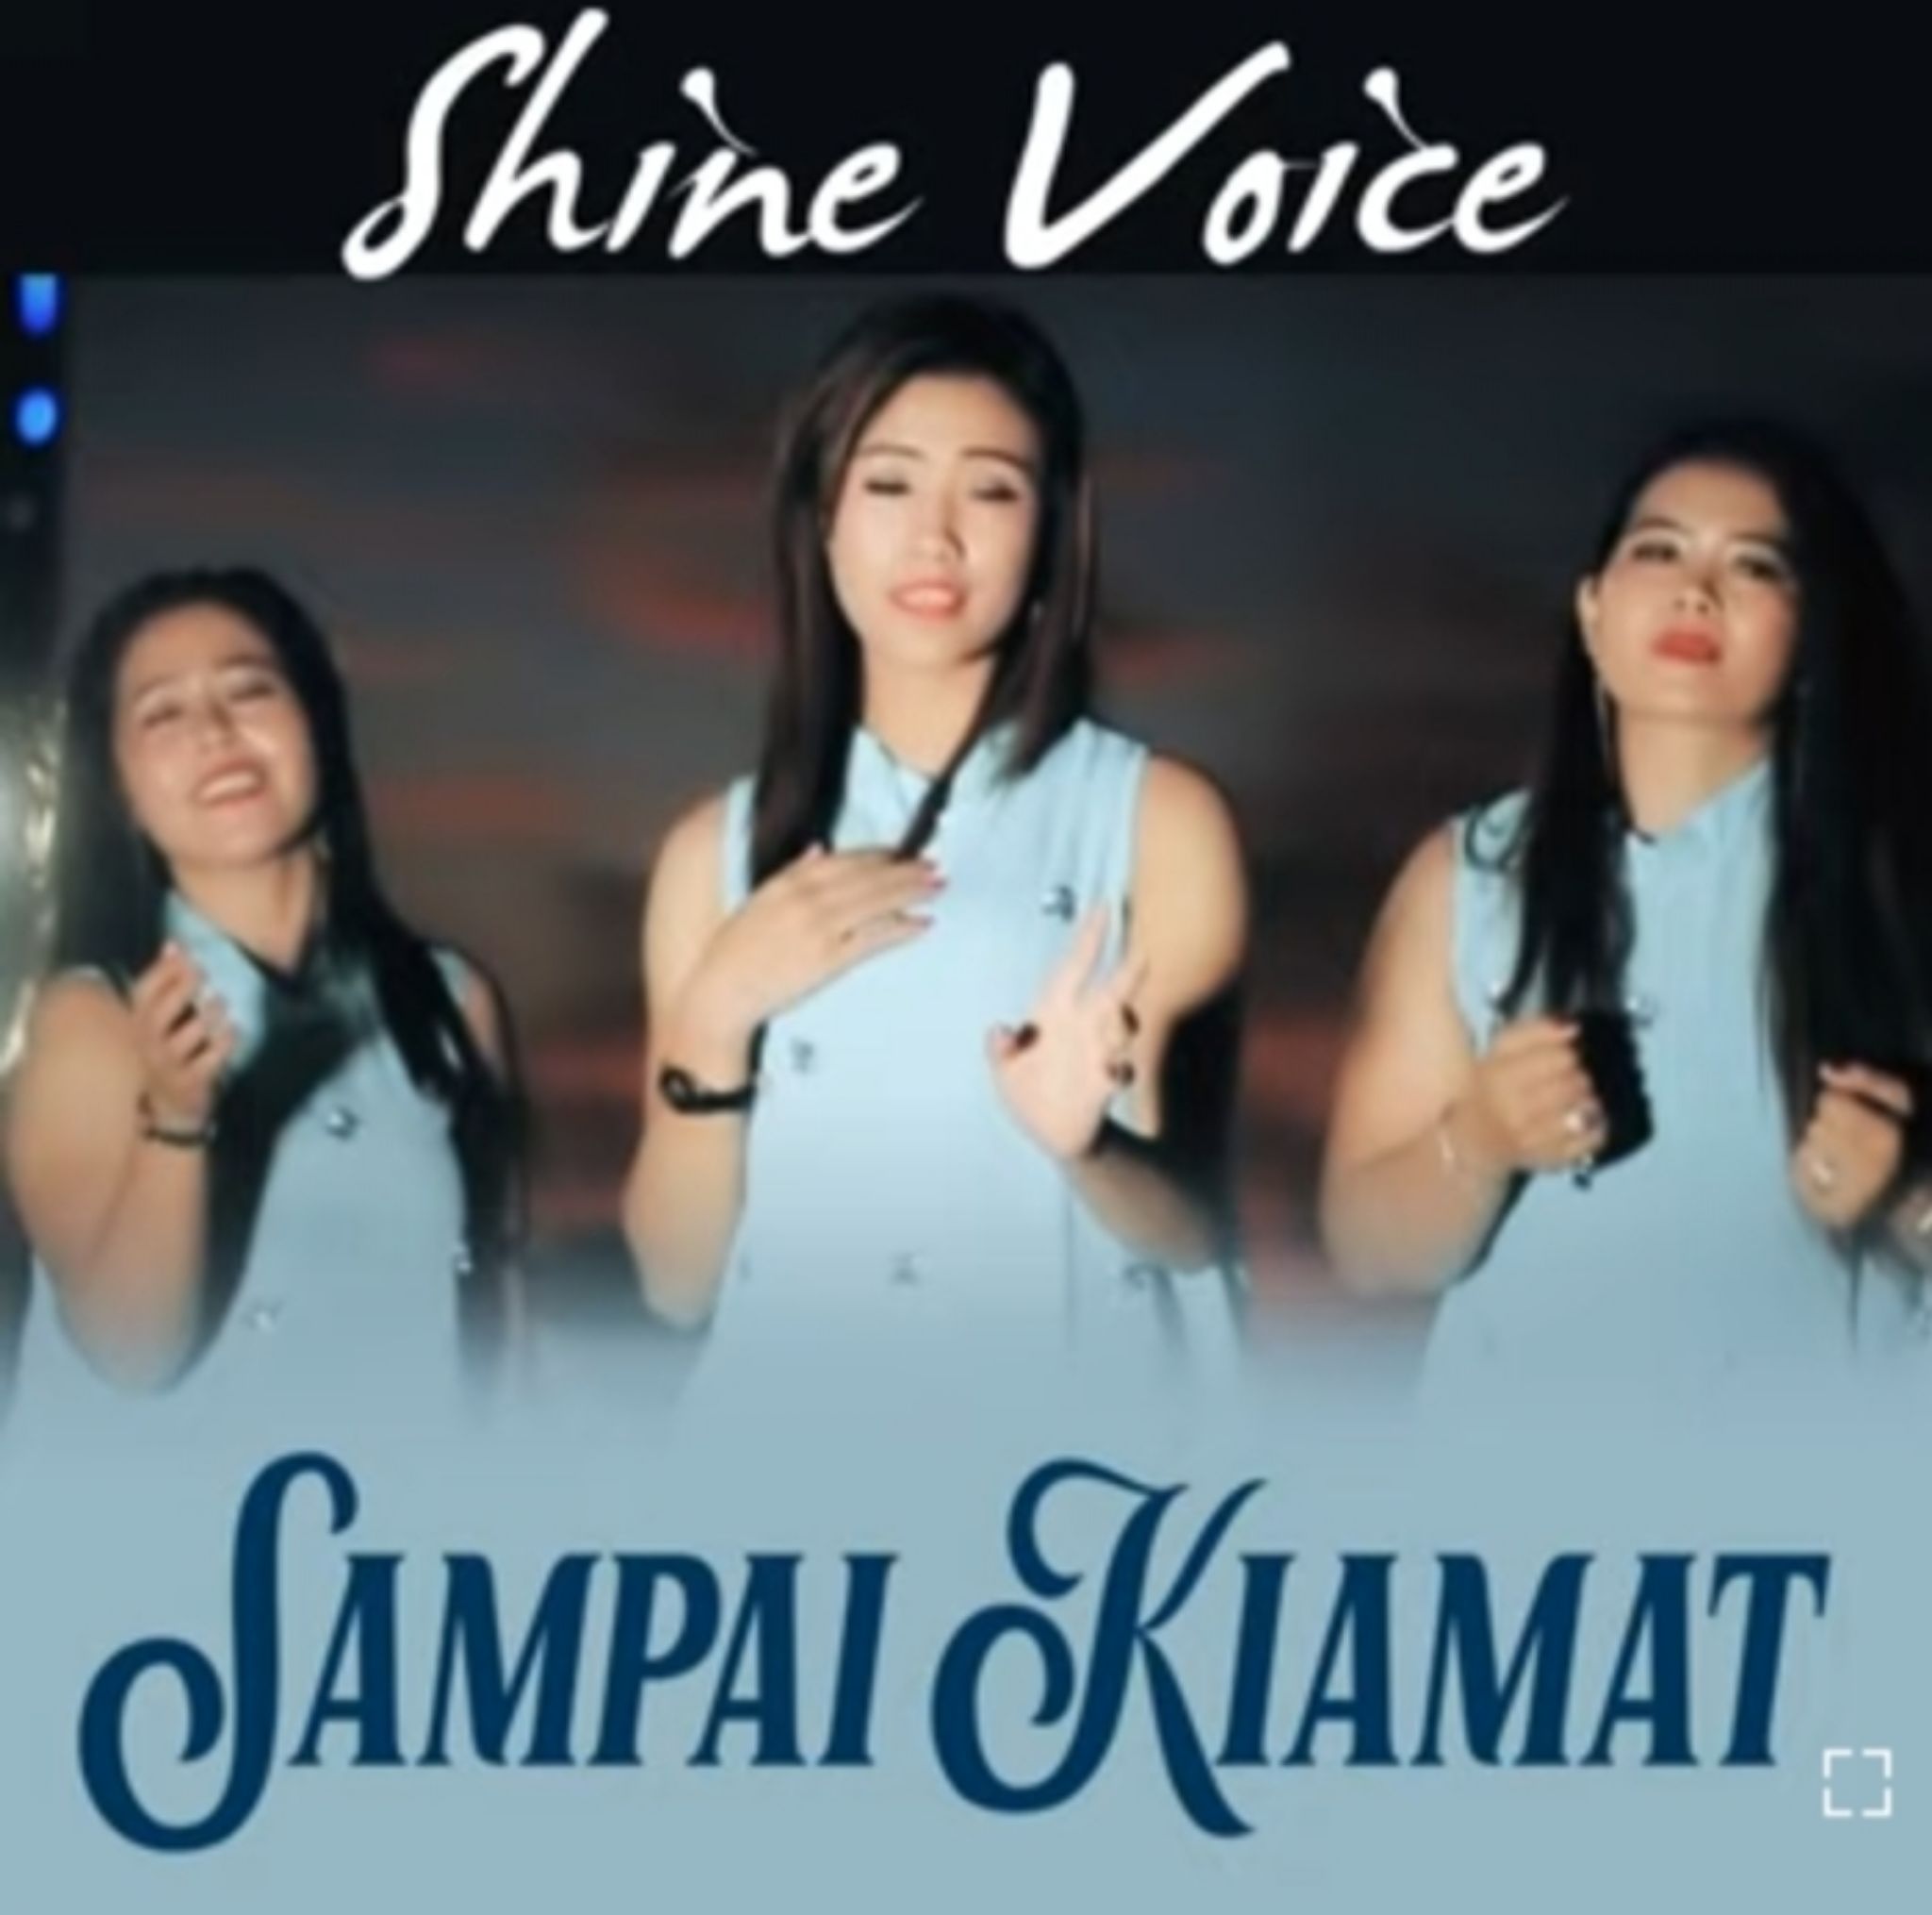 Lirik Lagu Batak 'Sampai Kiamat' oleh Shine Voice Jurnal